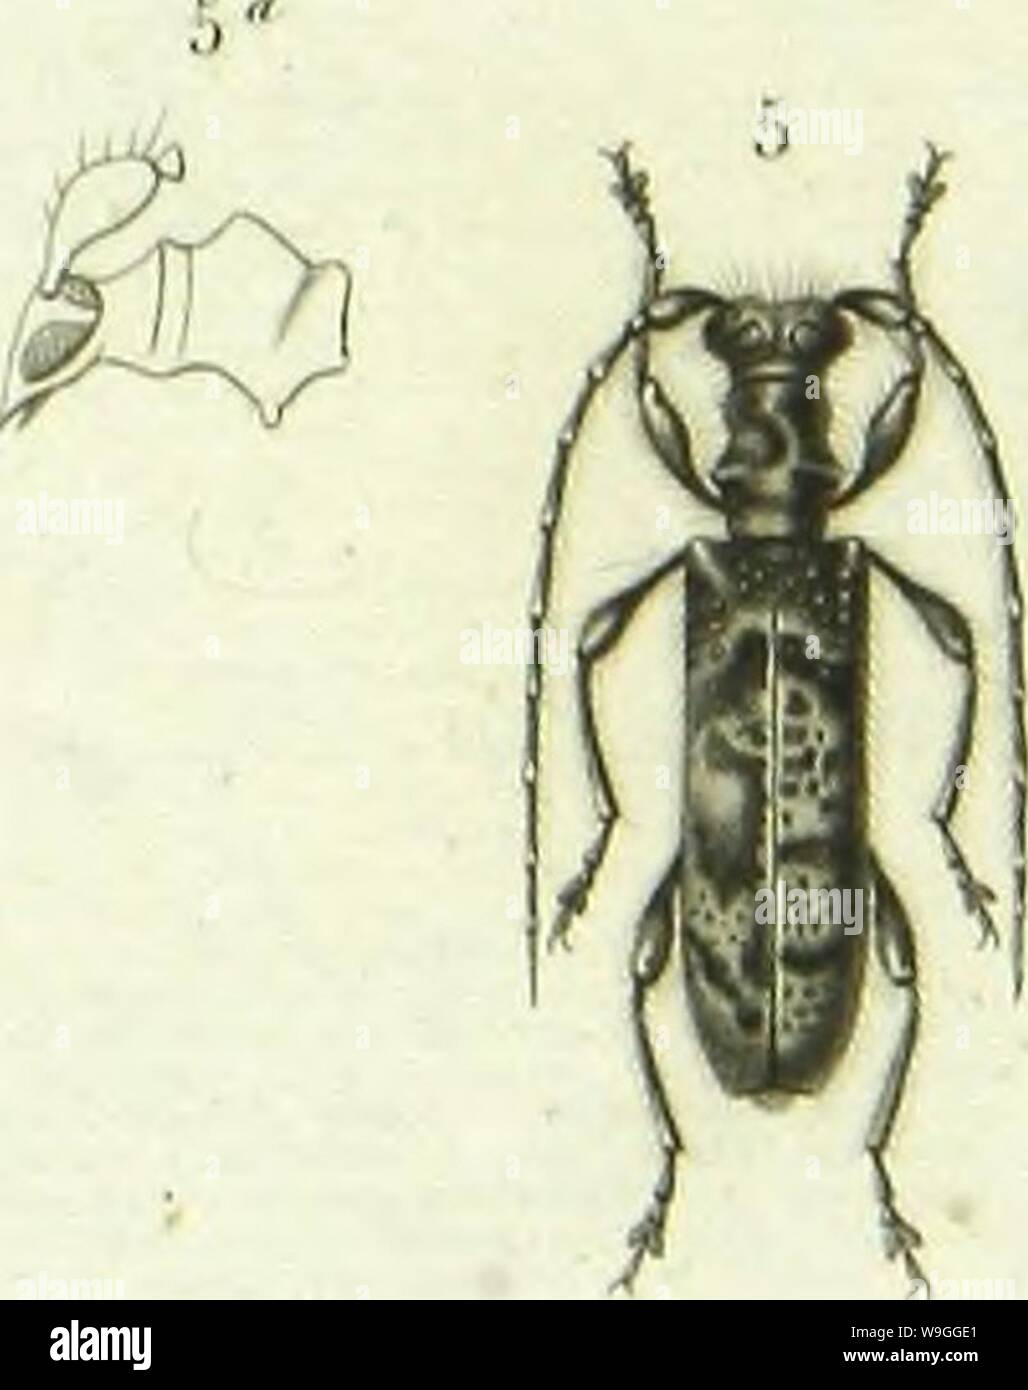 Archive image from page 224 of Histoire naturelle des insectes . Histoire naturelle des insectes : genera des coleopteres, ou expose methodique et critique de tous les genres proposes jusqu'ici dans cet ordre d'insects  CUbiodiversity1128056-9876 Year: 1854 ( Ã    MÃ®llloCCPa l.;i&lt;âr;â¢/. ' |Ã®cllicl|ll[ll .iii.ilriiiiii. /Â»/.Â«â I.inili/.oln vn.nln. /'Â».n-, 4 (':illi&lt;l|i.|iÂ»is .â ..â iil.-IUi-i.-,, /v//!/-. .'1. TcsSilI'IMll.l ilixl.iliiiii y,;,,,,,- Stock Photo